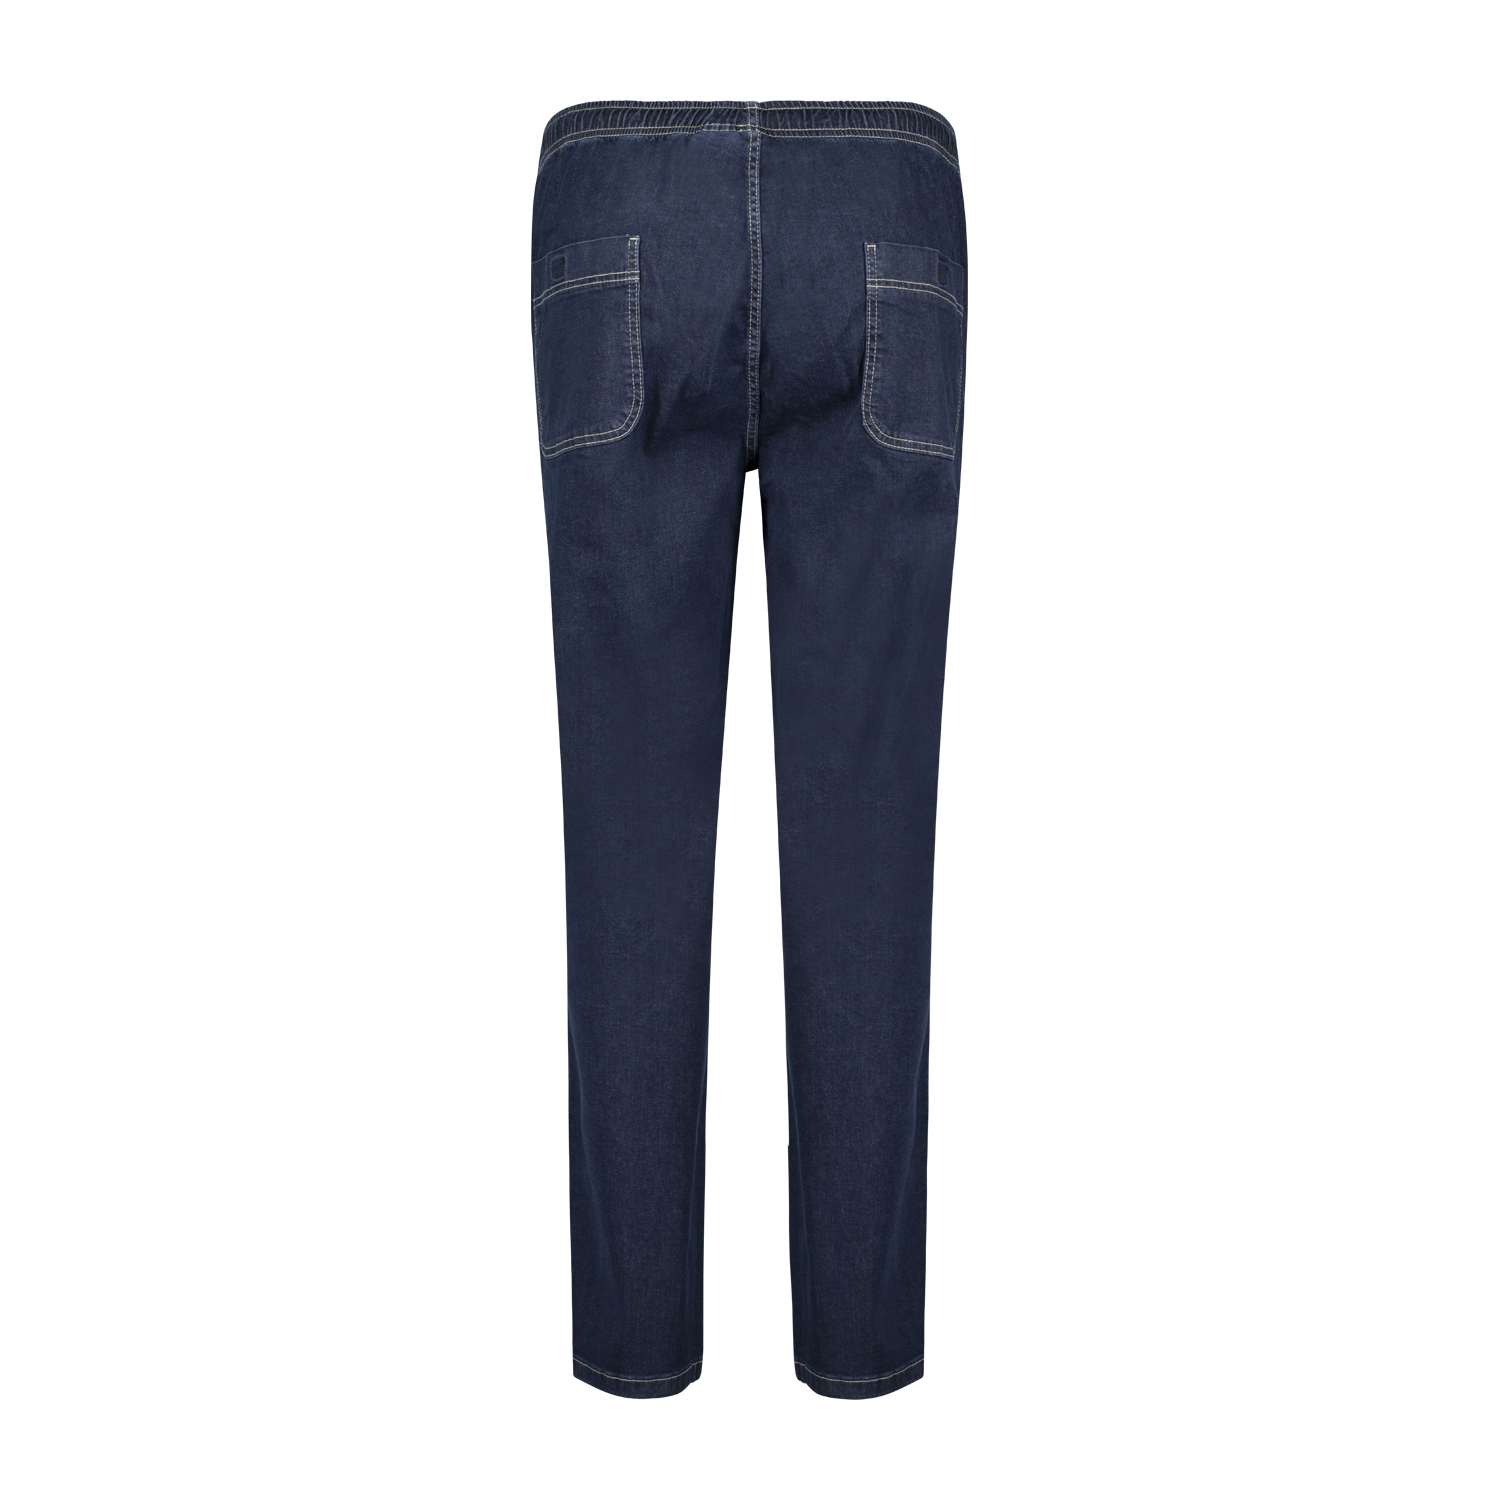 Dunkelblaue Jogging-Jeans von Abraxas in großen Größen bis 12XL